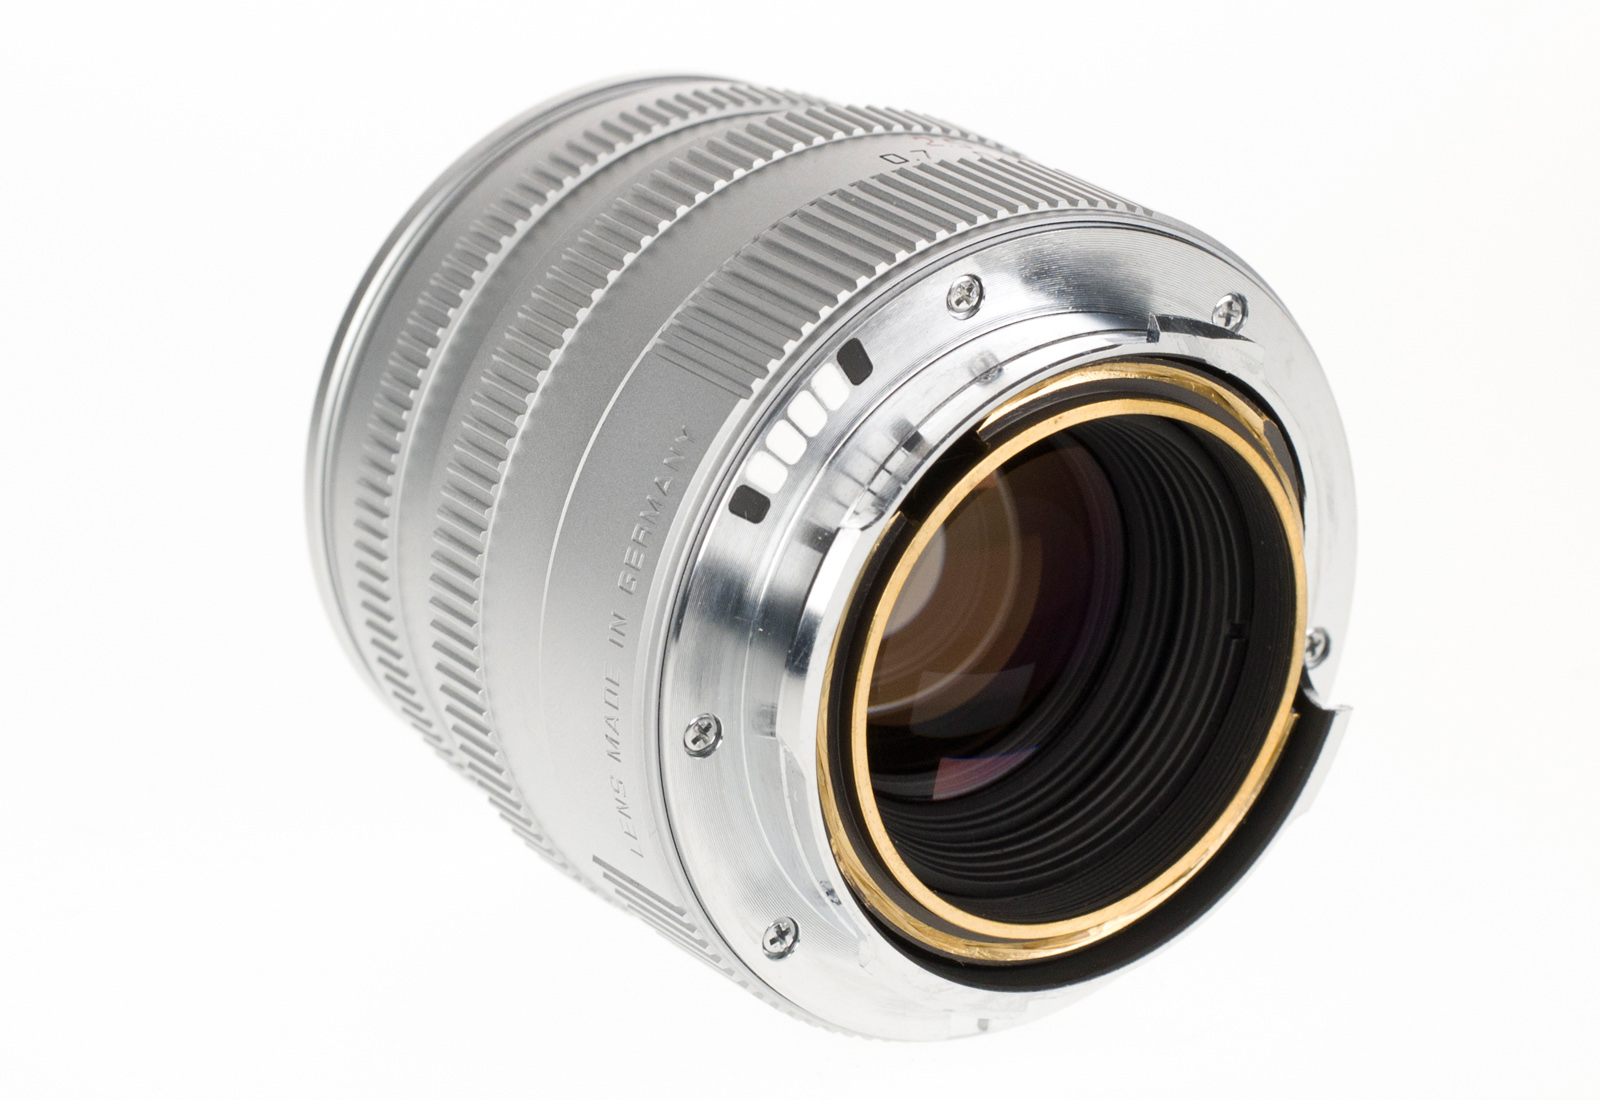 Leica Summicron-M 1:2/50mm, silver chrome 11816